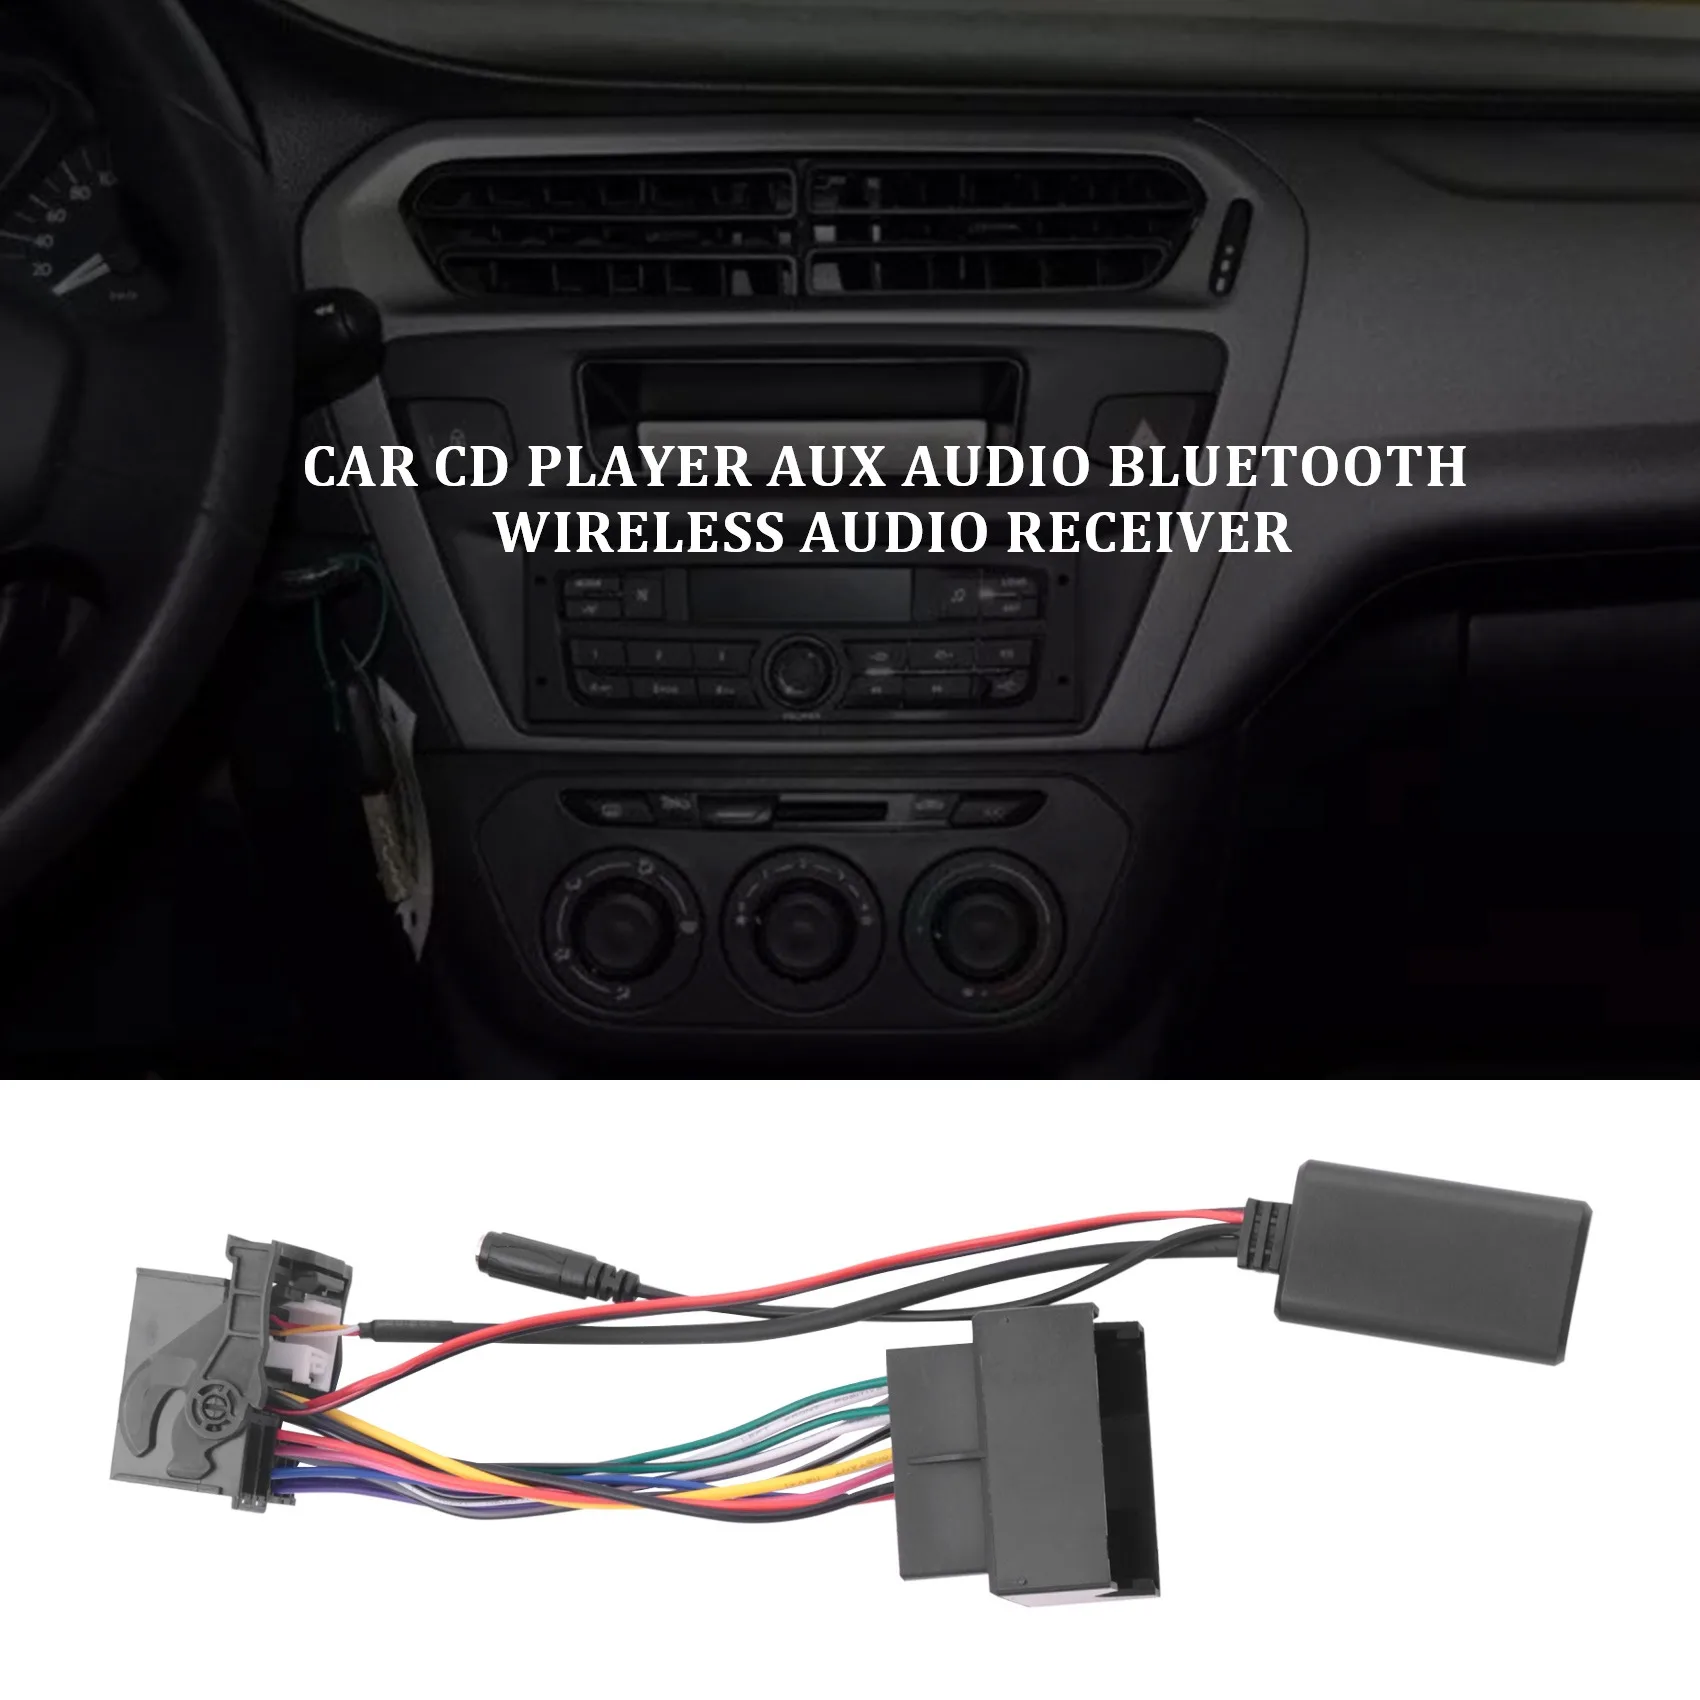 Автомобильный Bluetooth 5,0 Кабель Aux, микрофон, адаптер громкой связи для мобильного телефона, адаптер для бесплатных звонков для Peugeot Citroen C2 C5 RD4 Изображение 1